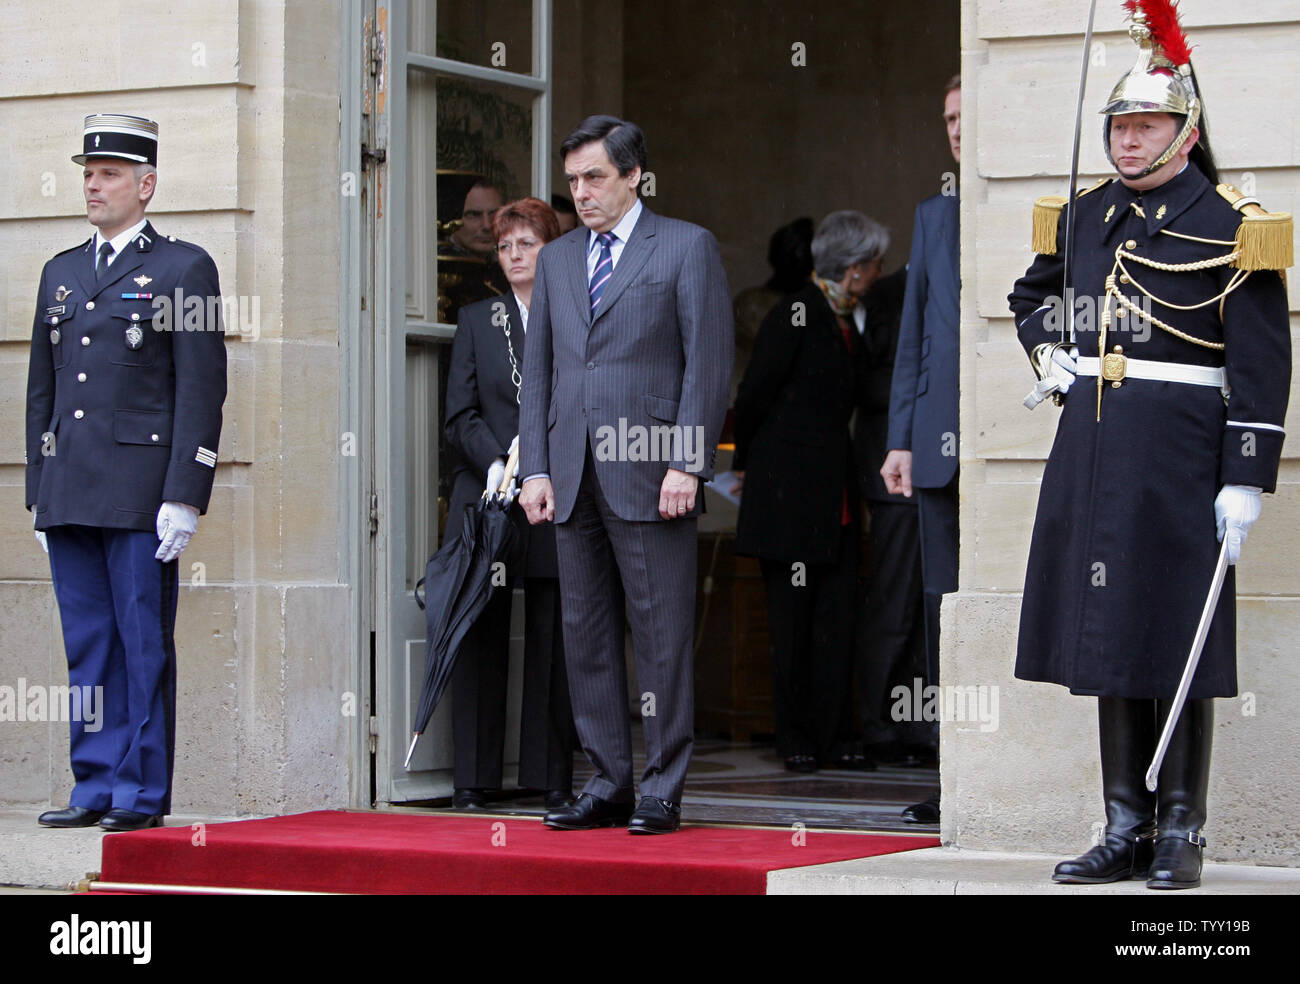 Le Premier ministre français François Fillon, attendre l'arrivée de président israélien Shimon Peres au bureau du premier ministre à Paris, le 11 mars 2008. Peres, qui est en France pour une durée de cinq jours est le premier chef de l'Etat à effectuer une visite d'état depuis la France. (Photo d'UPI/Eco Clement) Banque D'Images